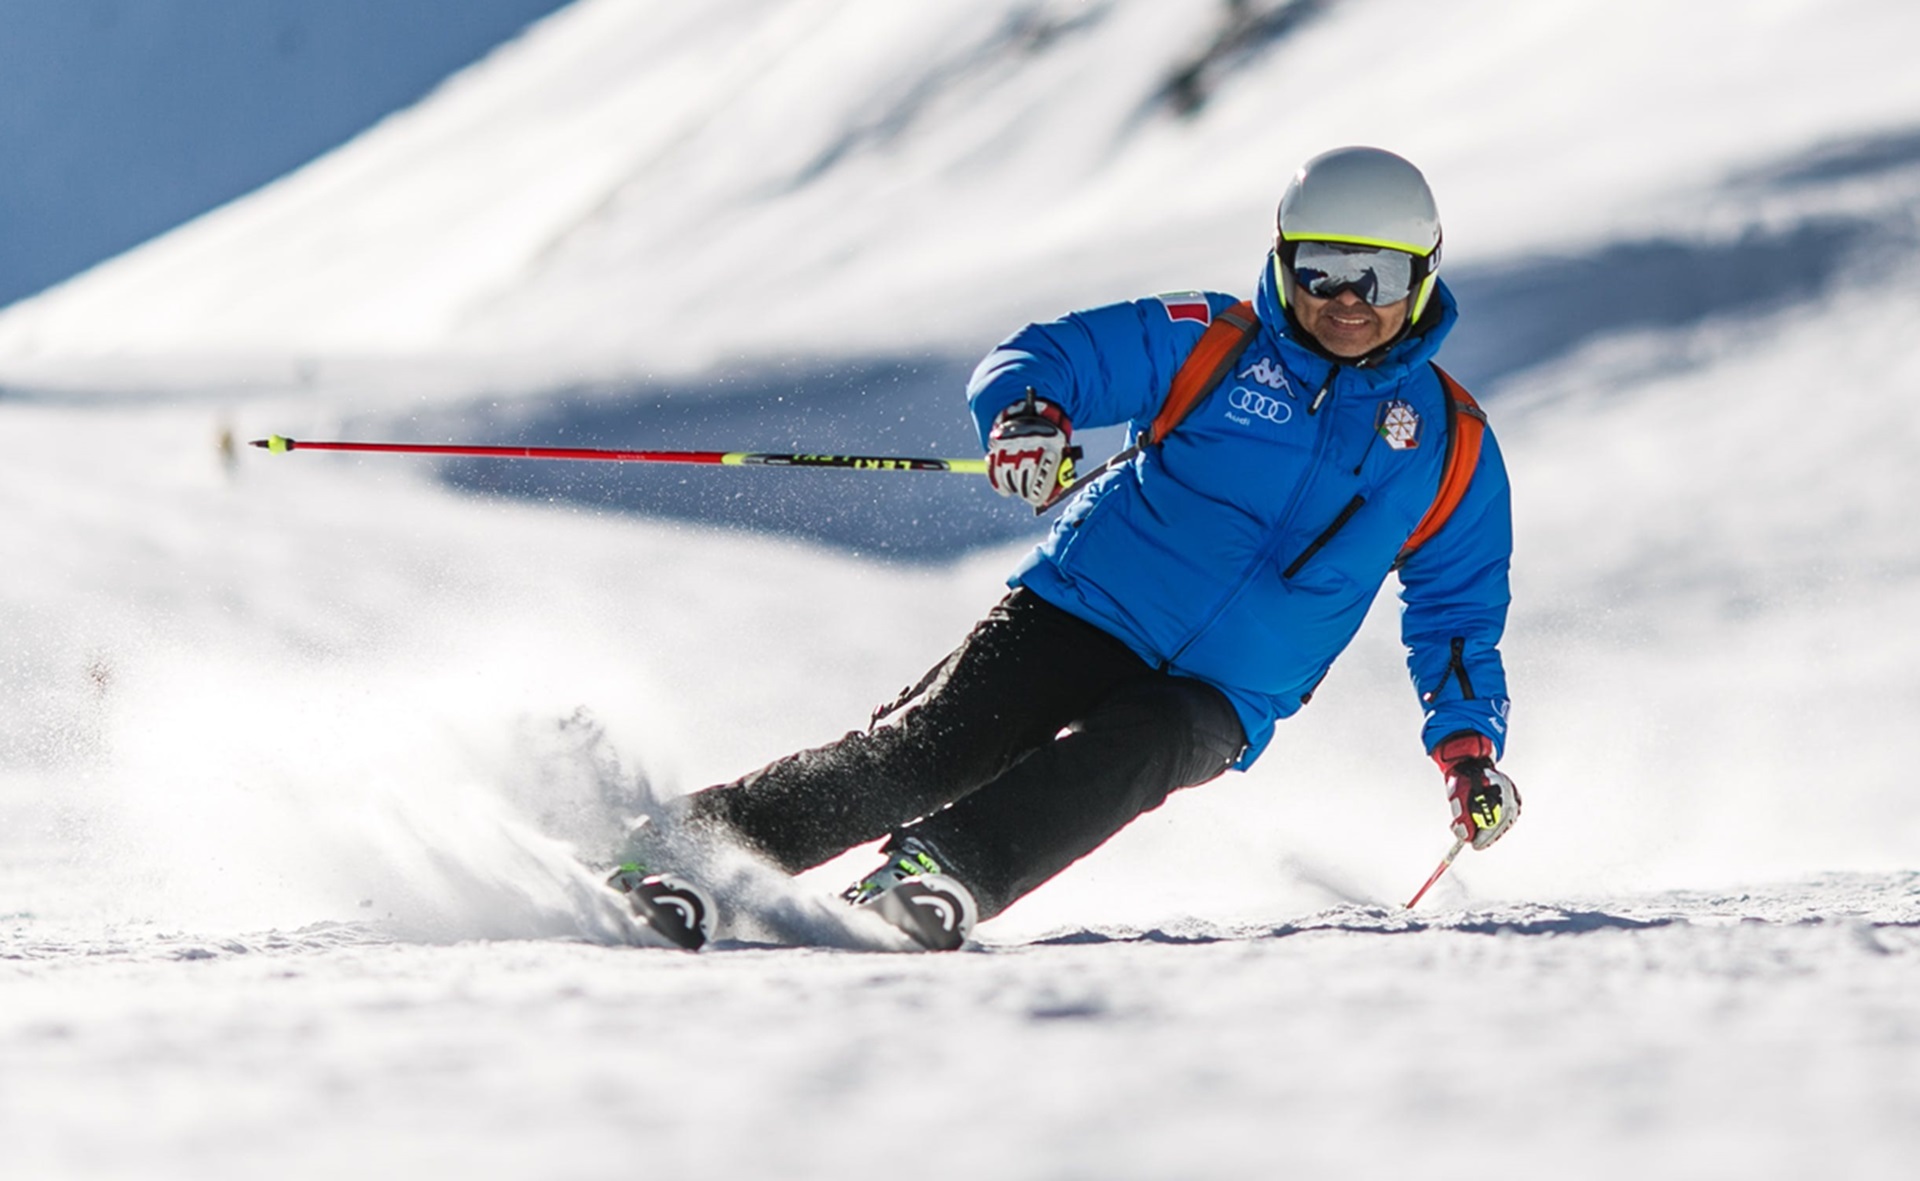 Blouson de ski: comment choisir la meilleure veste de ski pour homme pour une tenue de ski homme tendance ? Kappa ou gemyse homme veste de ski, à vous de choisir.